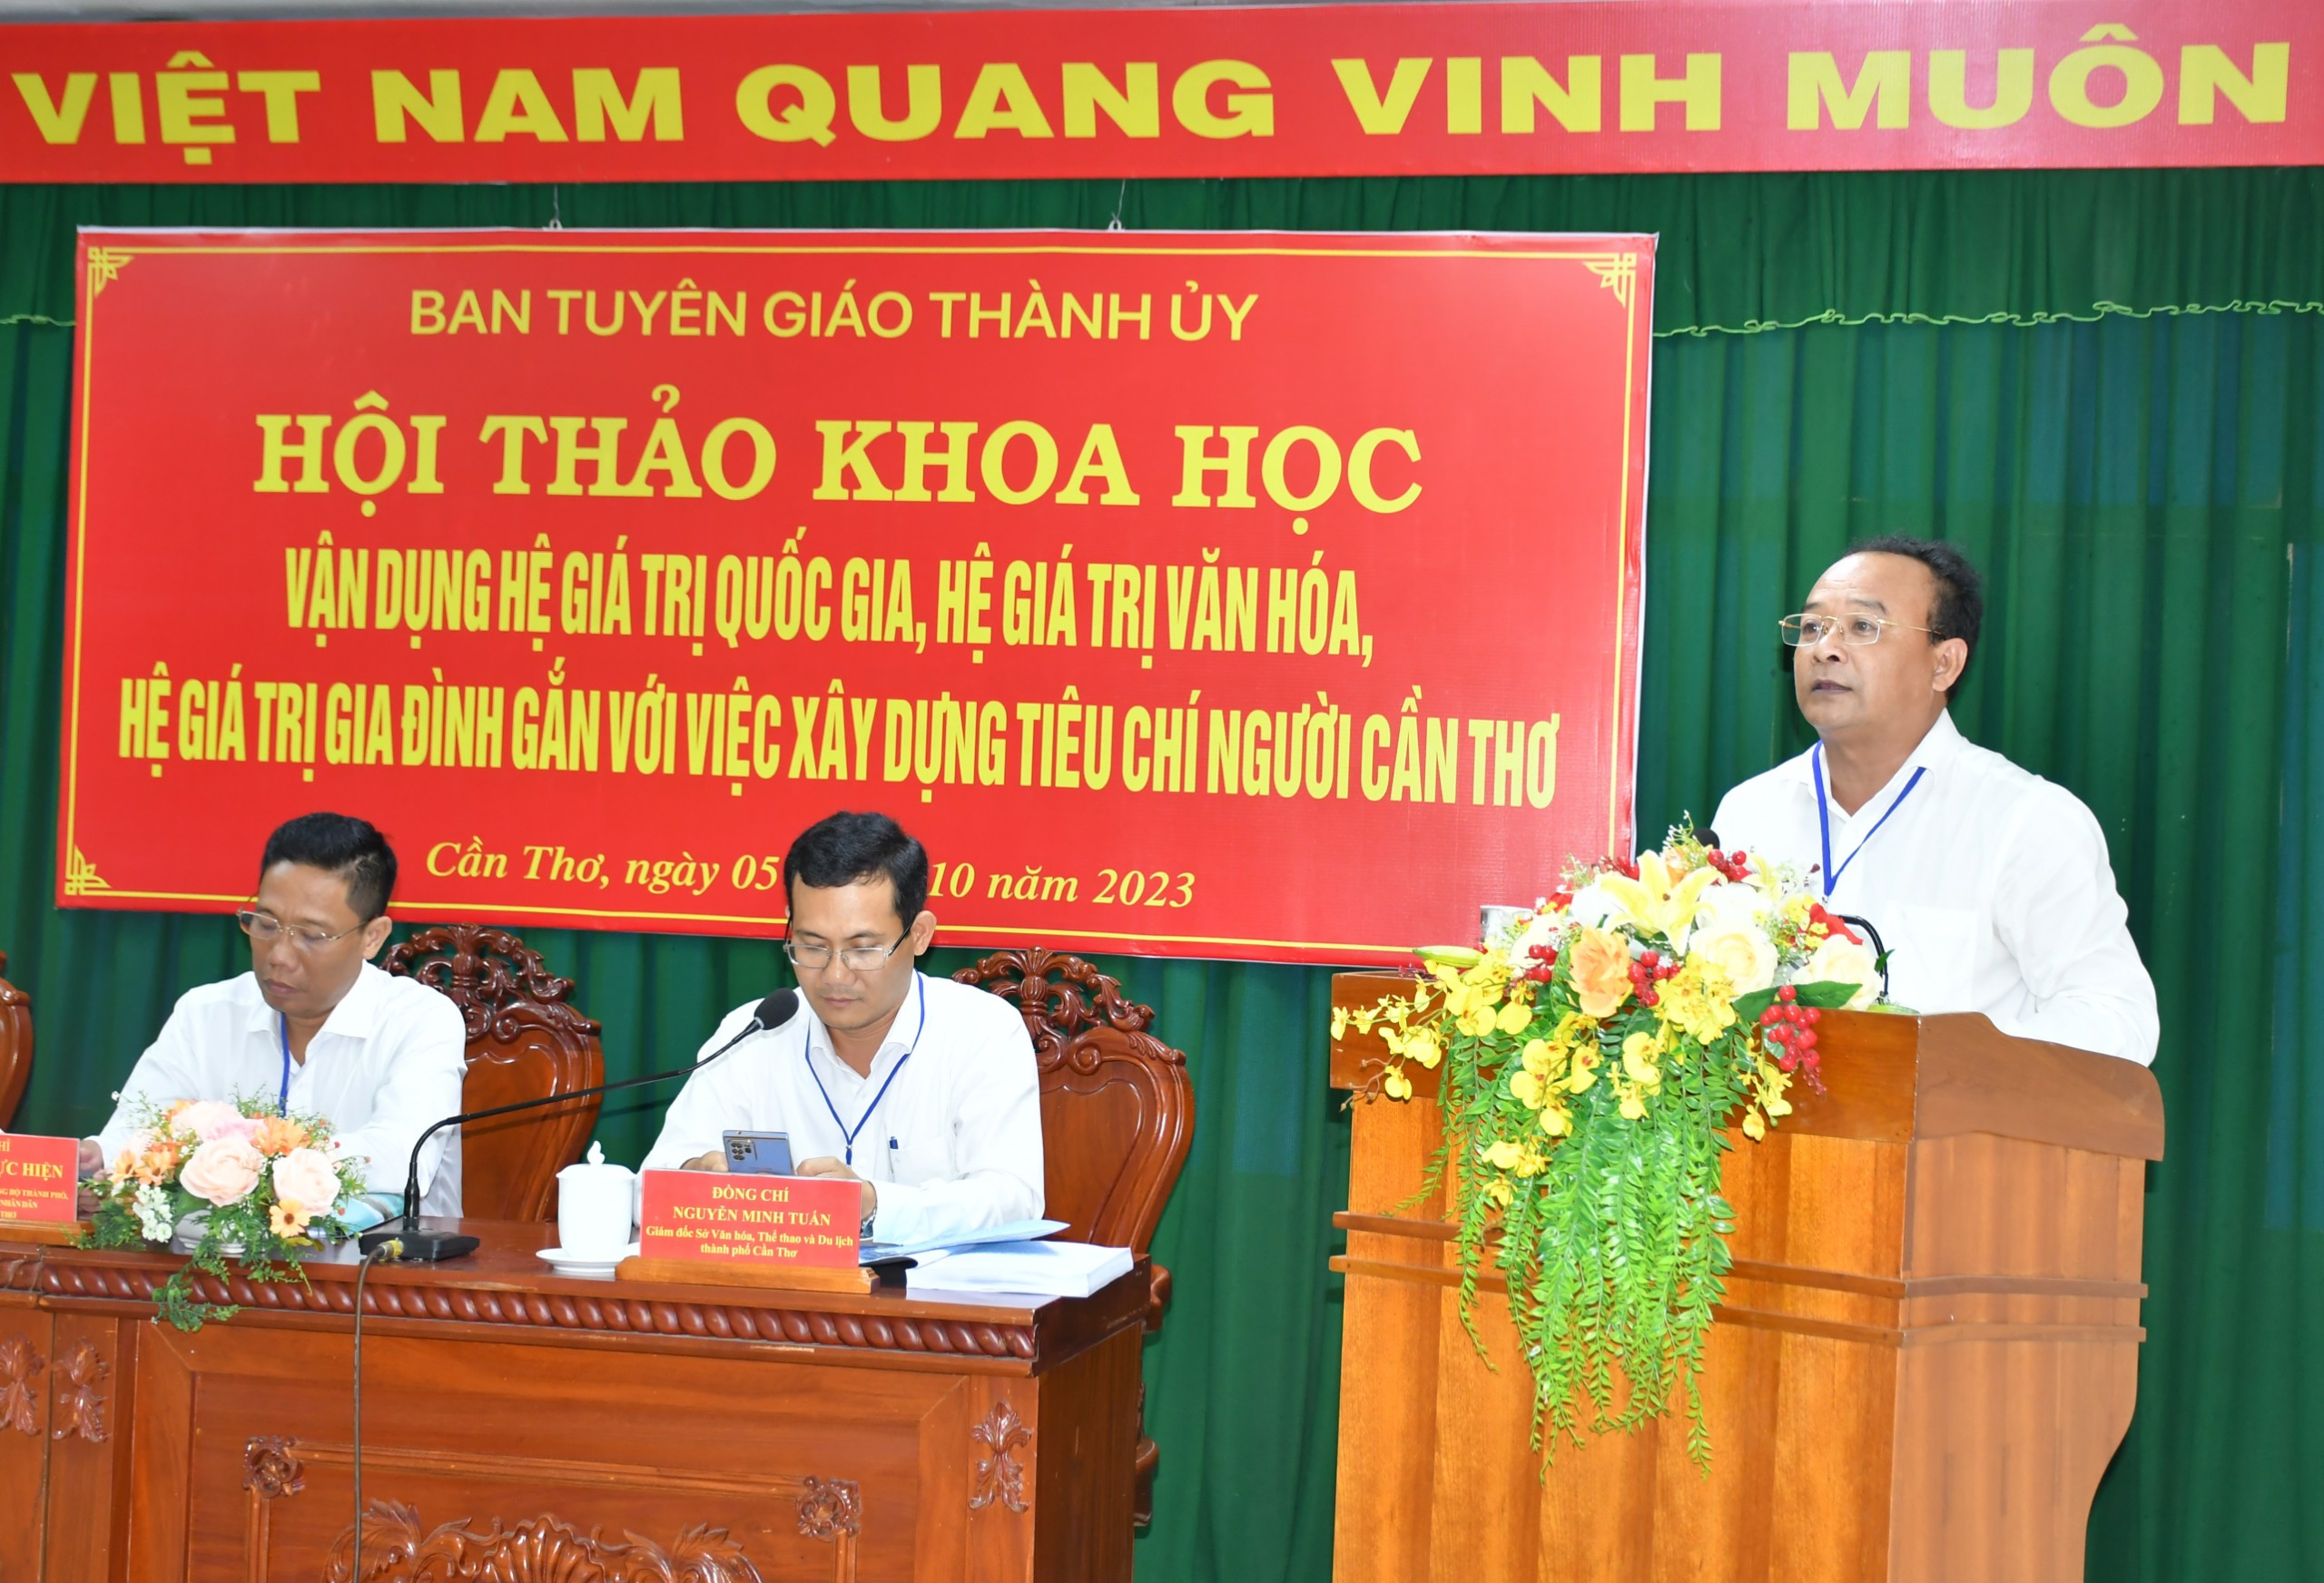 Ông Nguyễn Ngọc Tâm - Ủy viên BTV Thành ủy, Trưởng Ban Tuyên giáo Thành ủy Cần Thơ phát biểu tổng kết hội thảo.